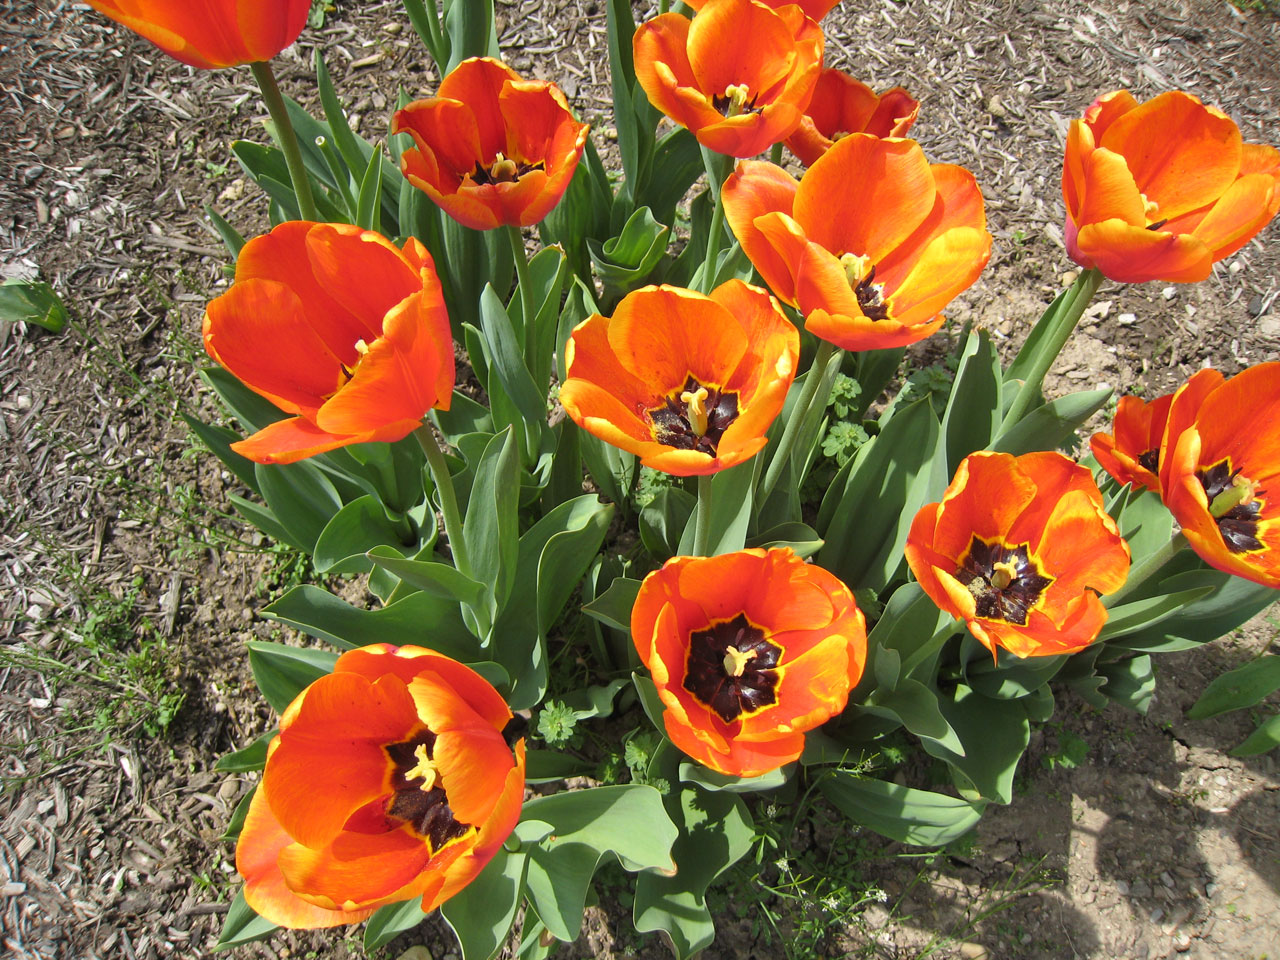 Bright orange tulips in spring